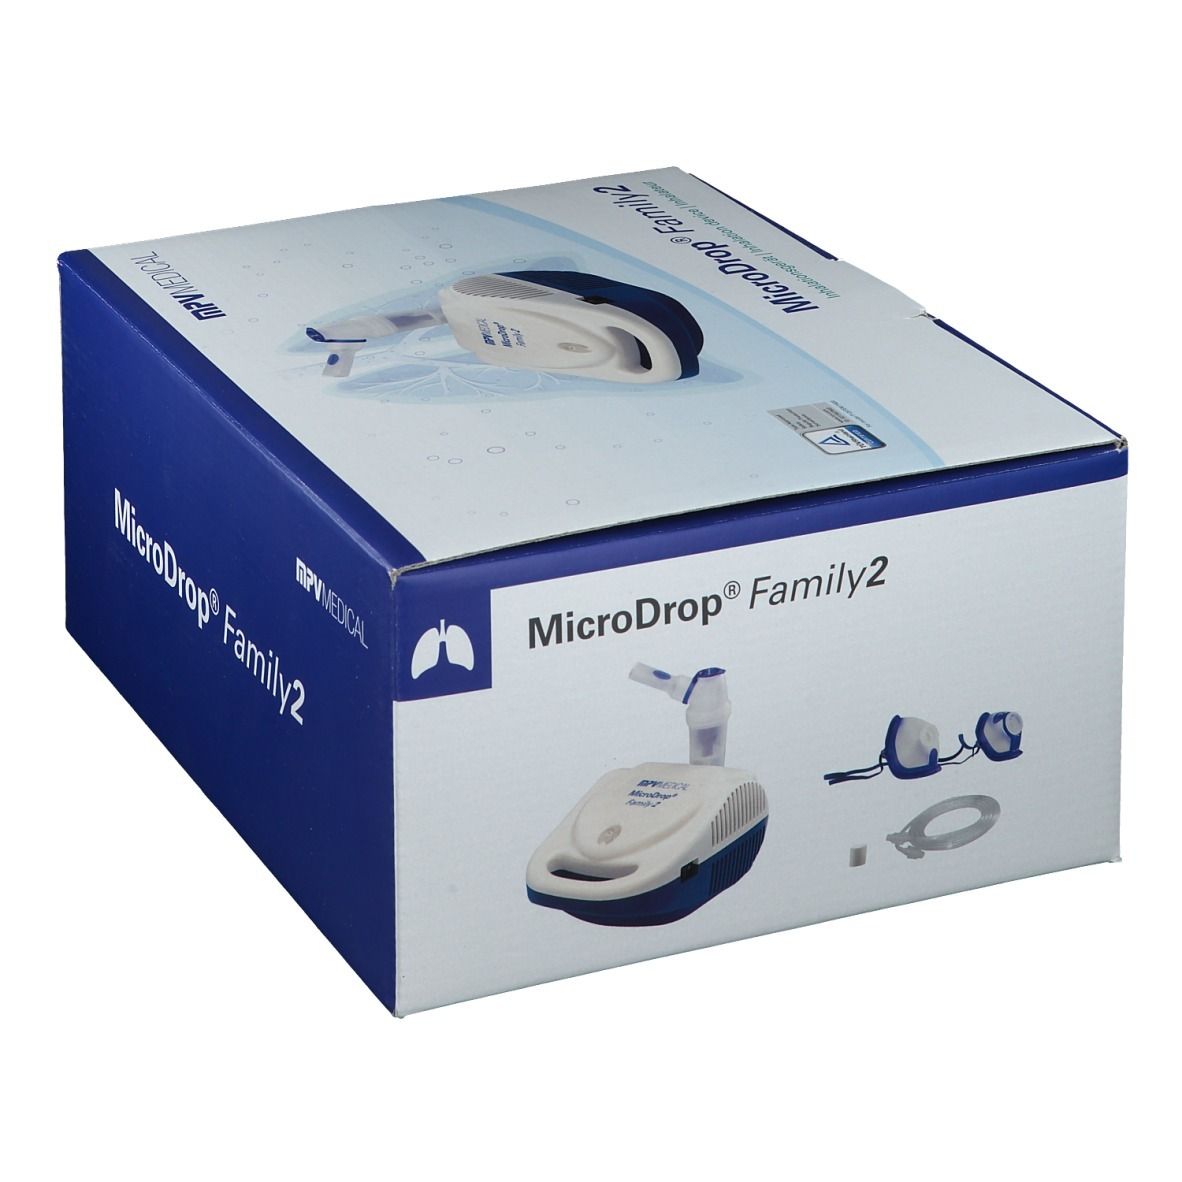 MicroDrop Family 2